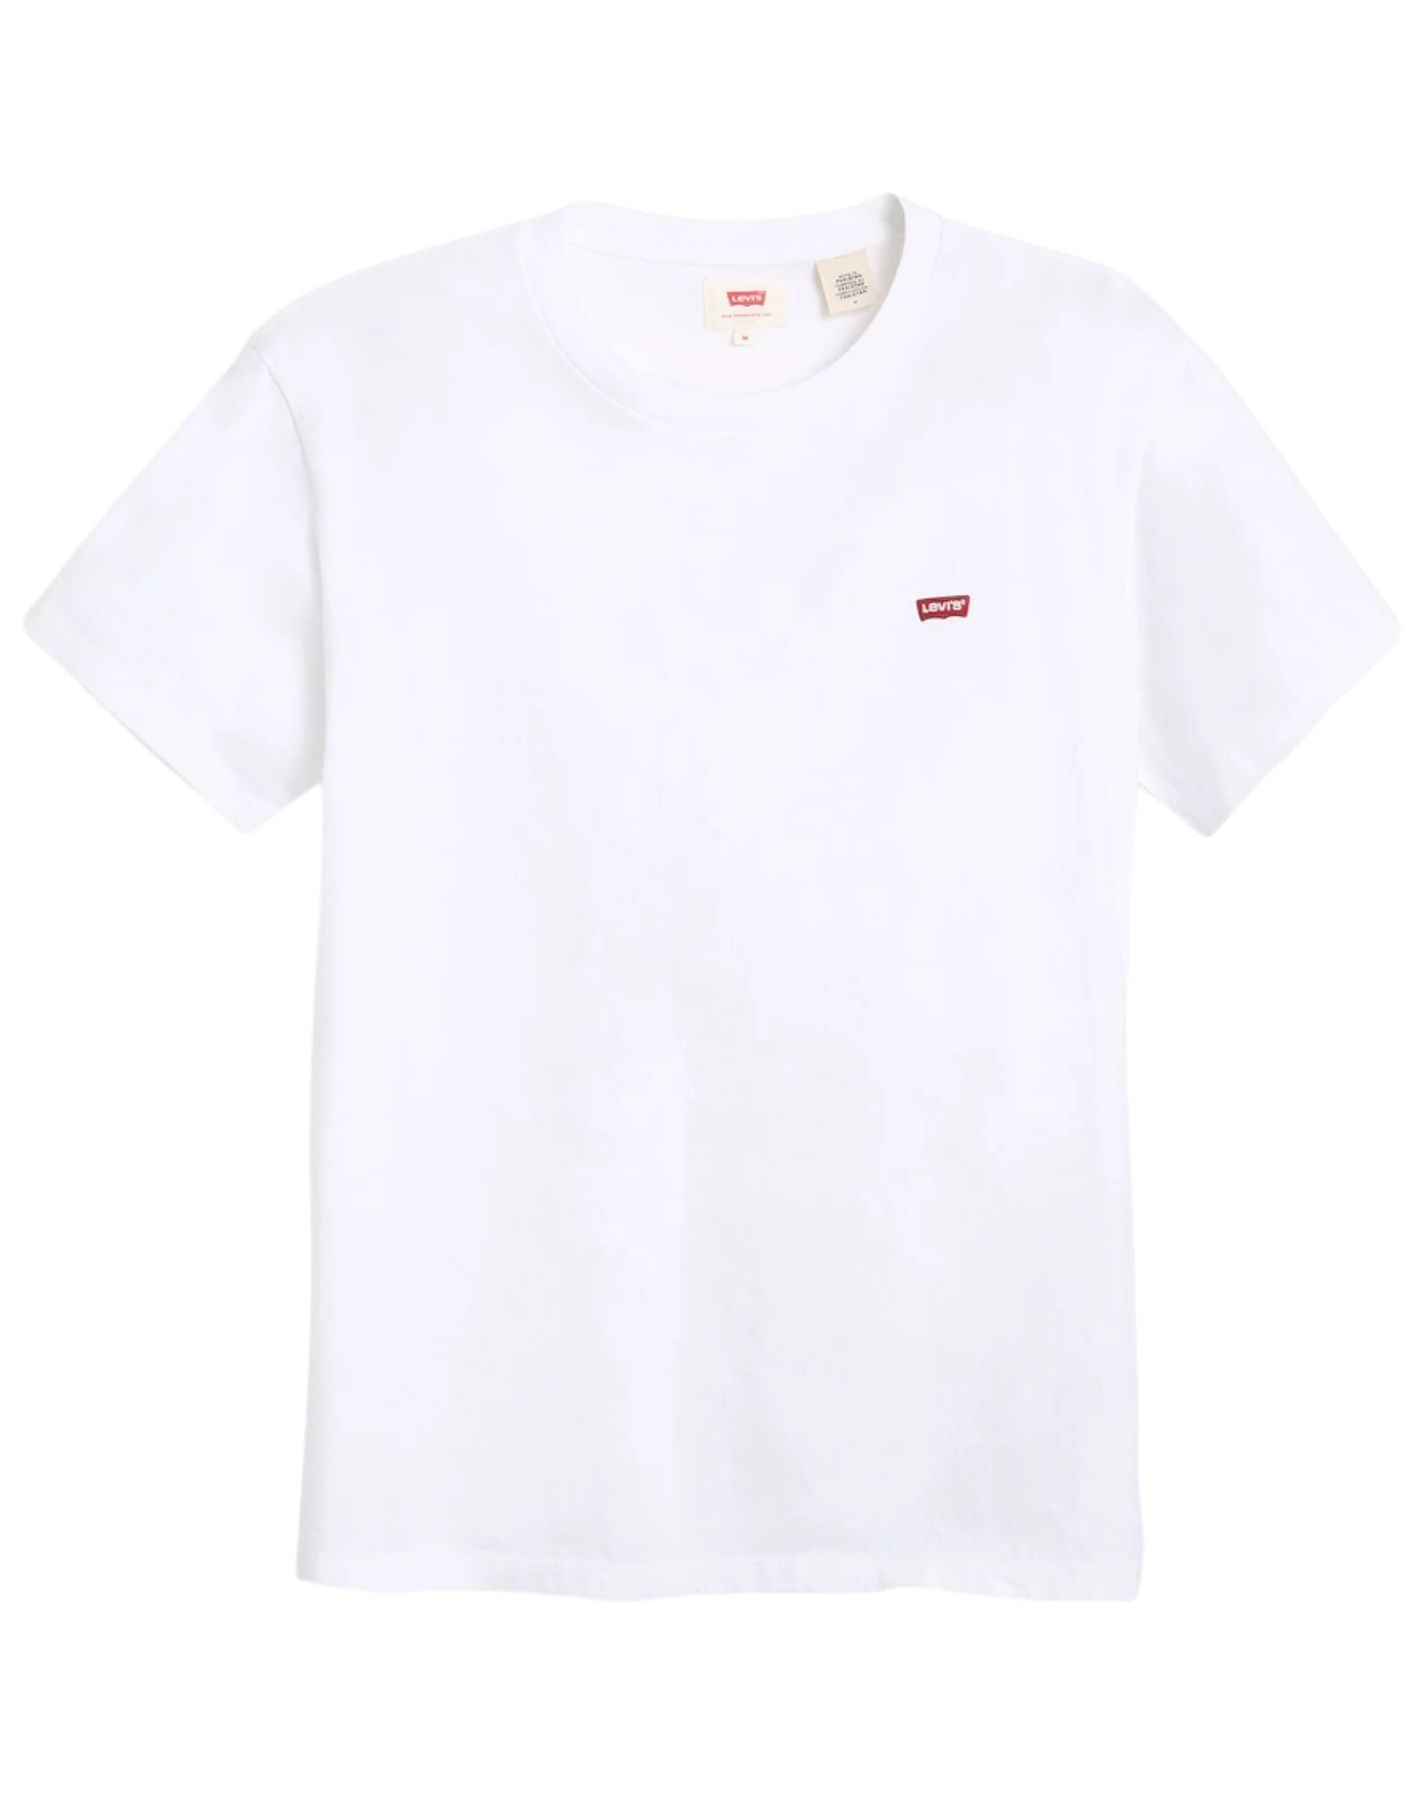 T-shirt pour l'homme 56605 0000 Levi blanc